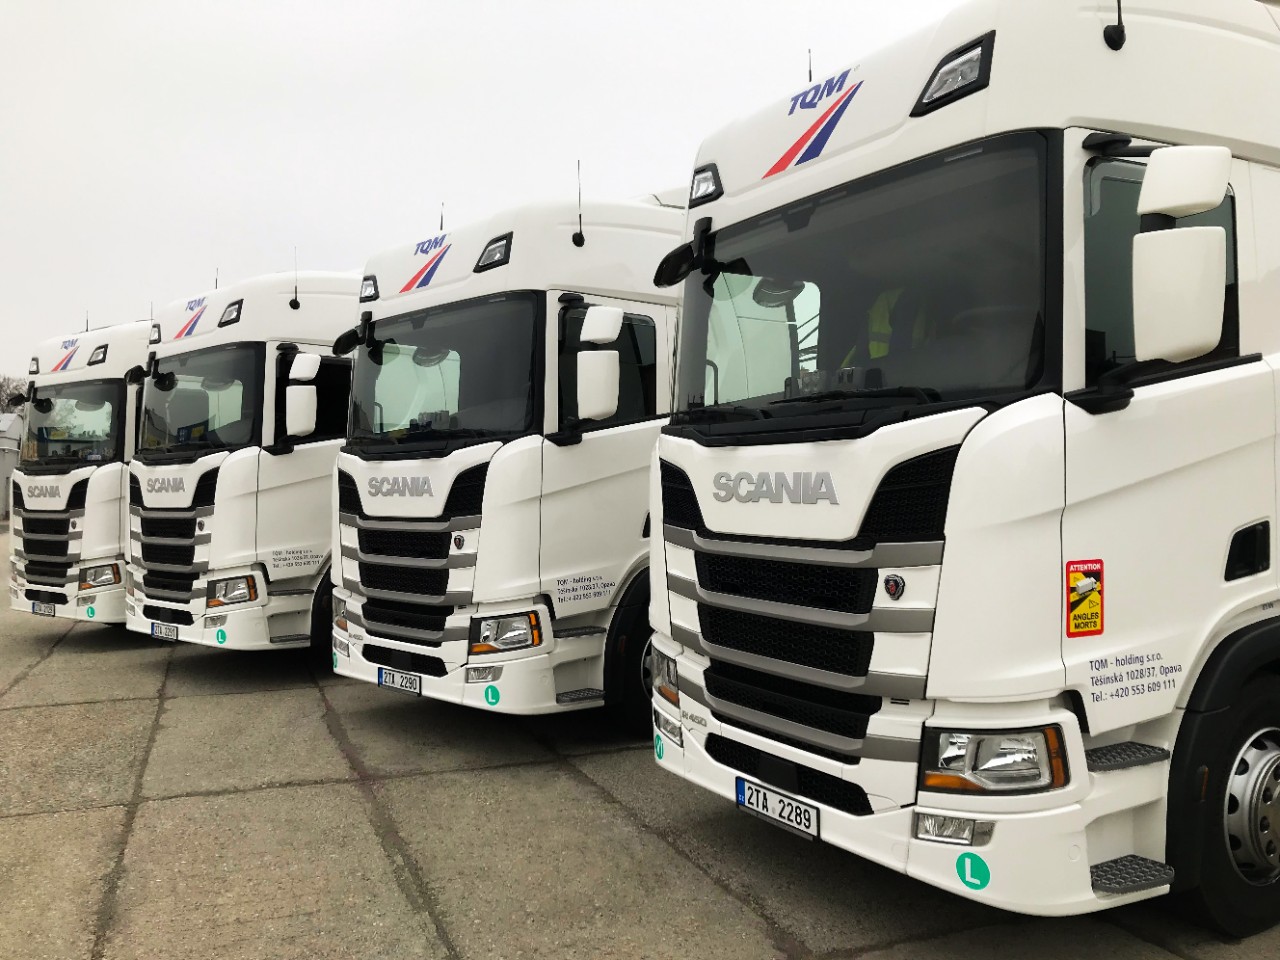 Dalších 5 vozidel Scania pro společnost TQM